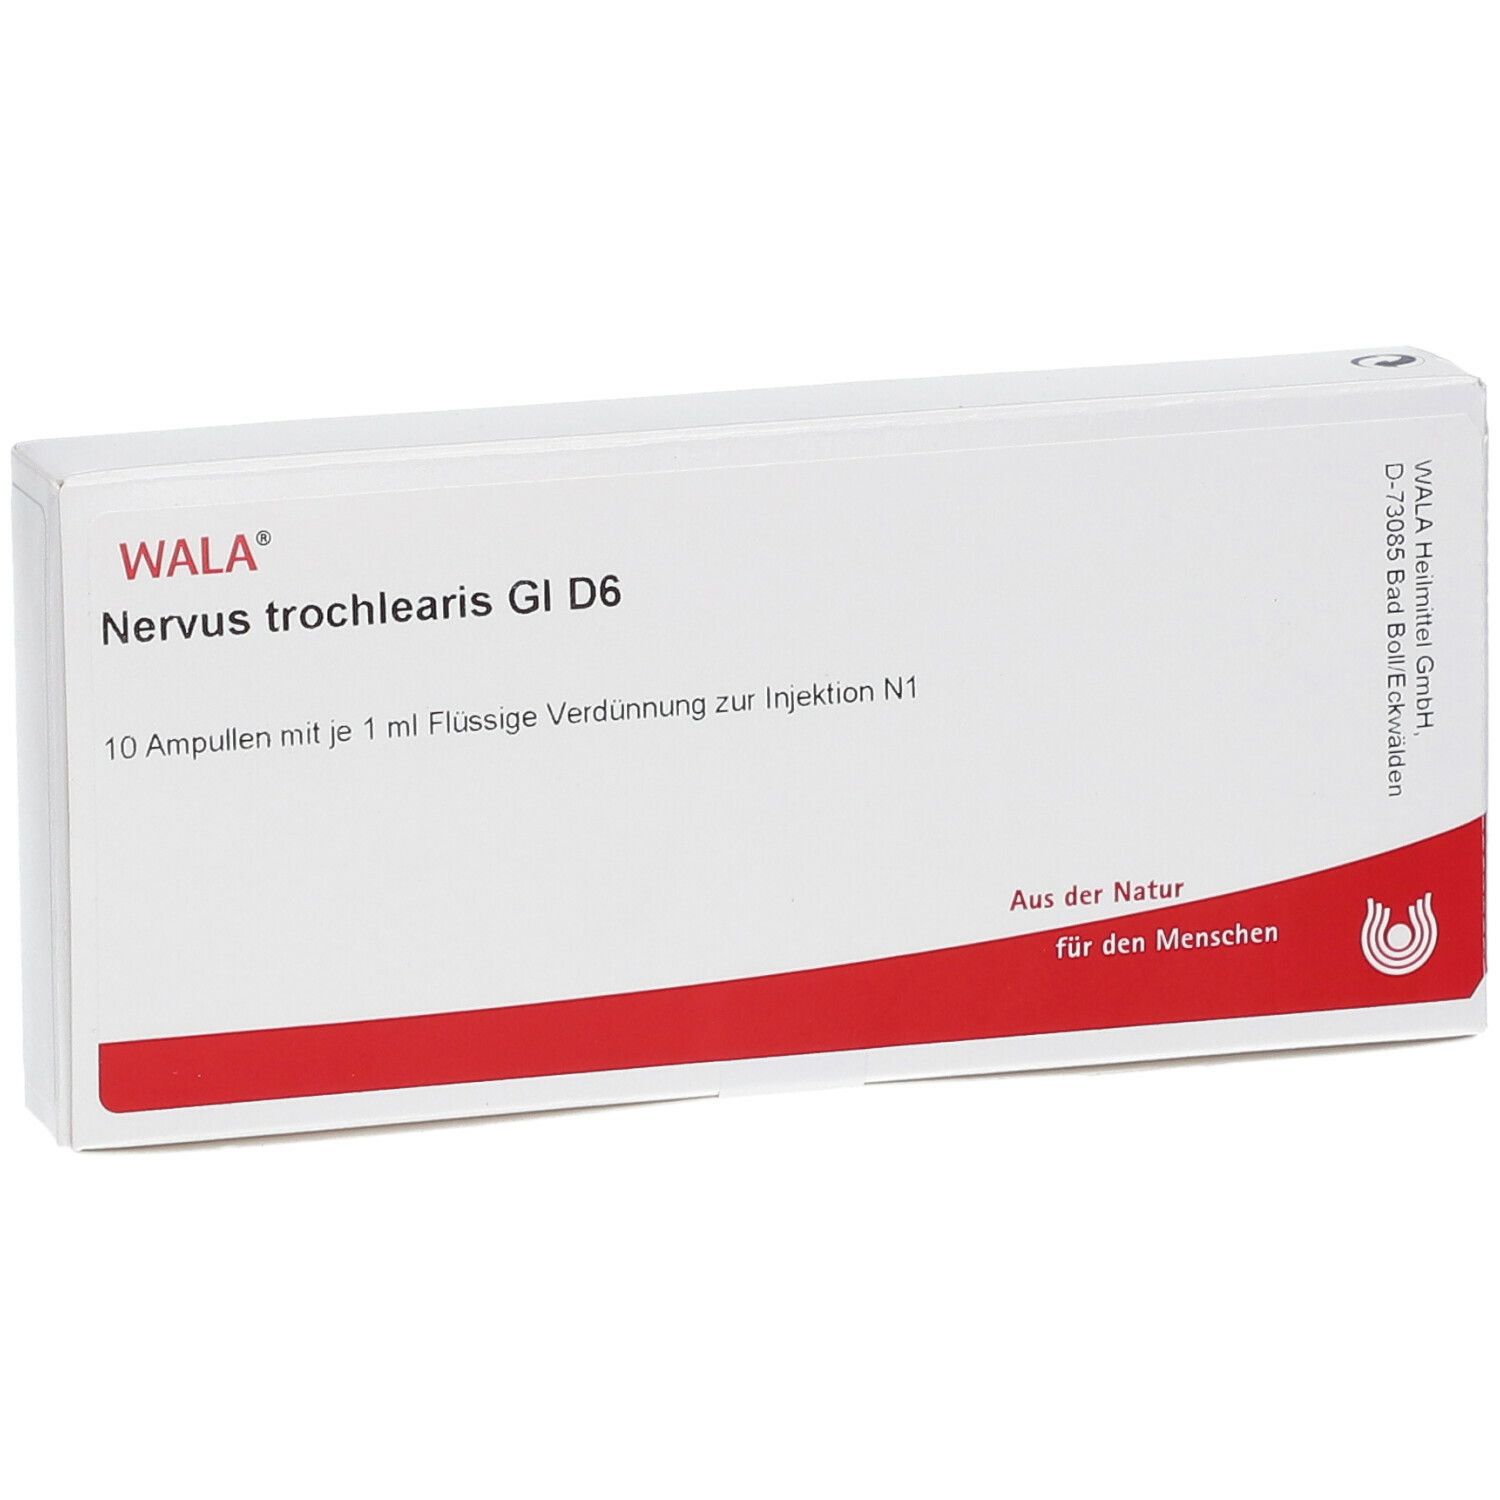 WALA® Nervus trochlearis Gl D 6